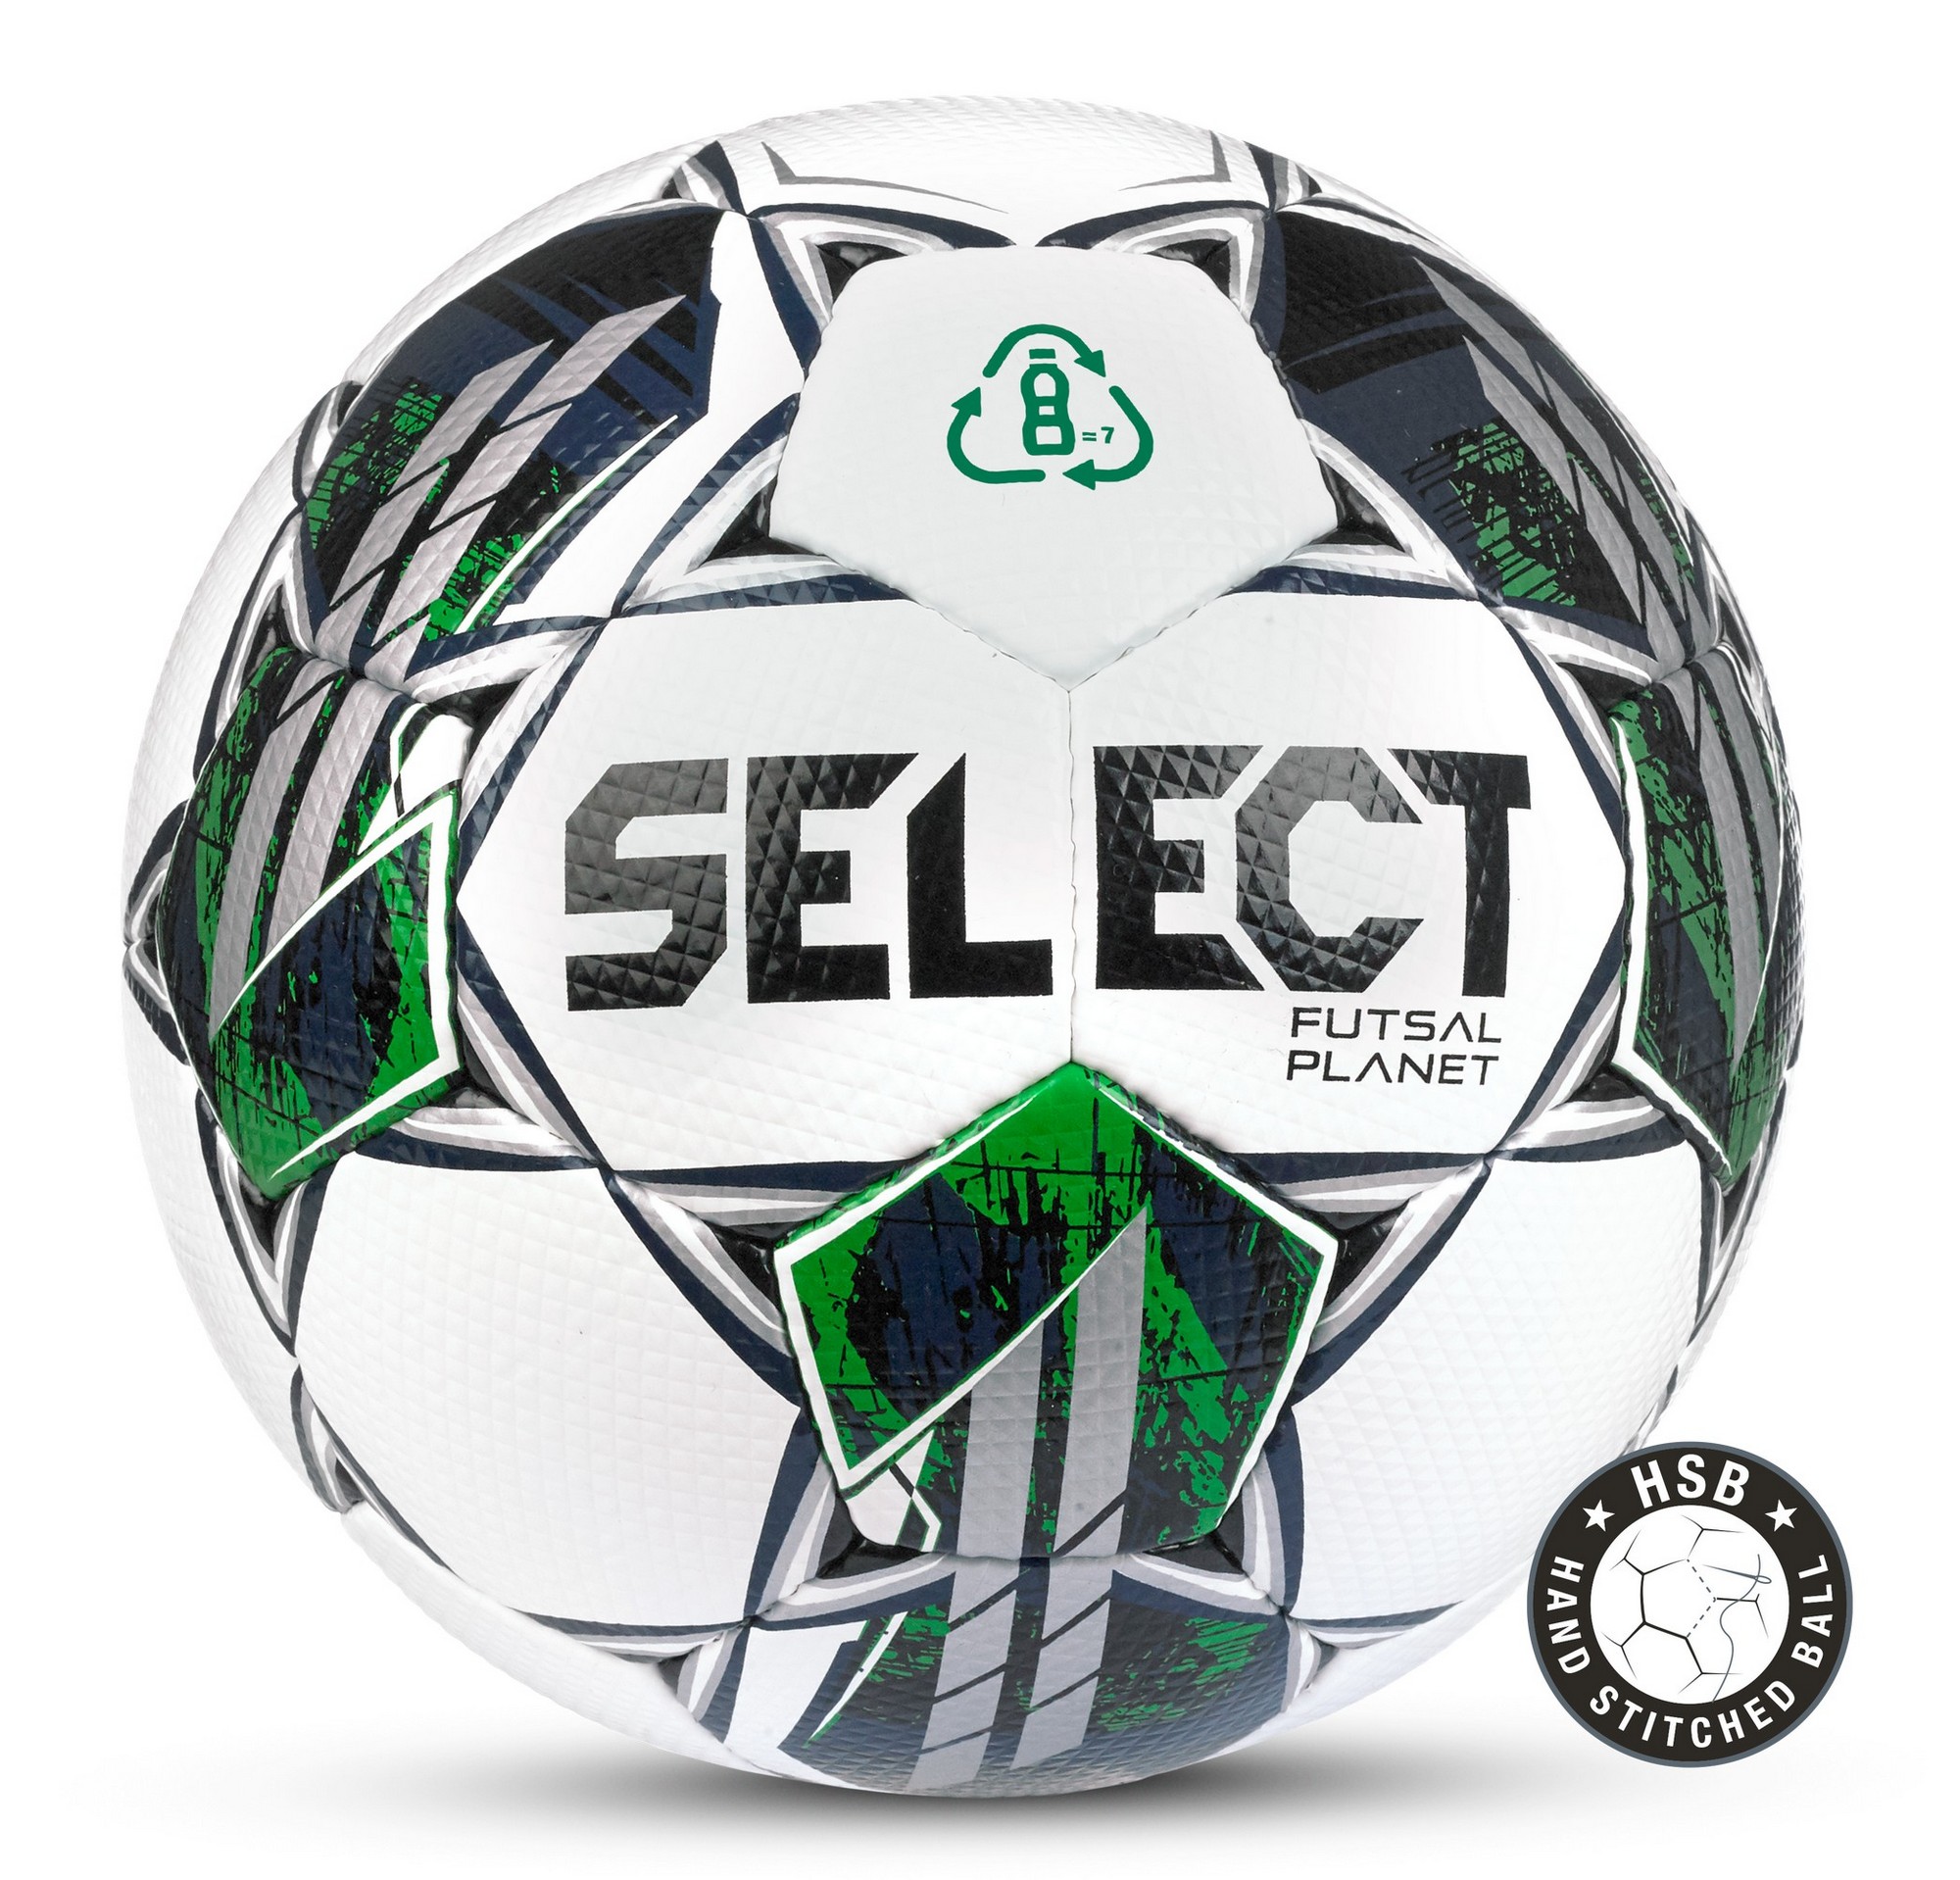 Футзальный мяч Select Futsal Planet v22 FIFA Basic1033460004,  - купить со скидкой